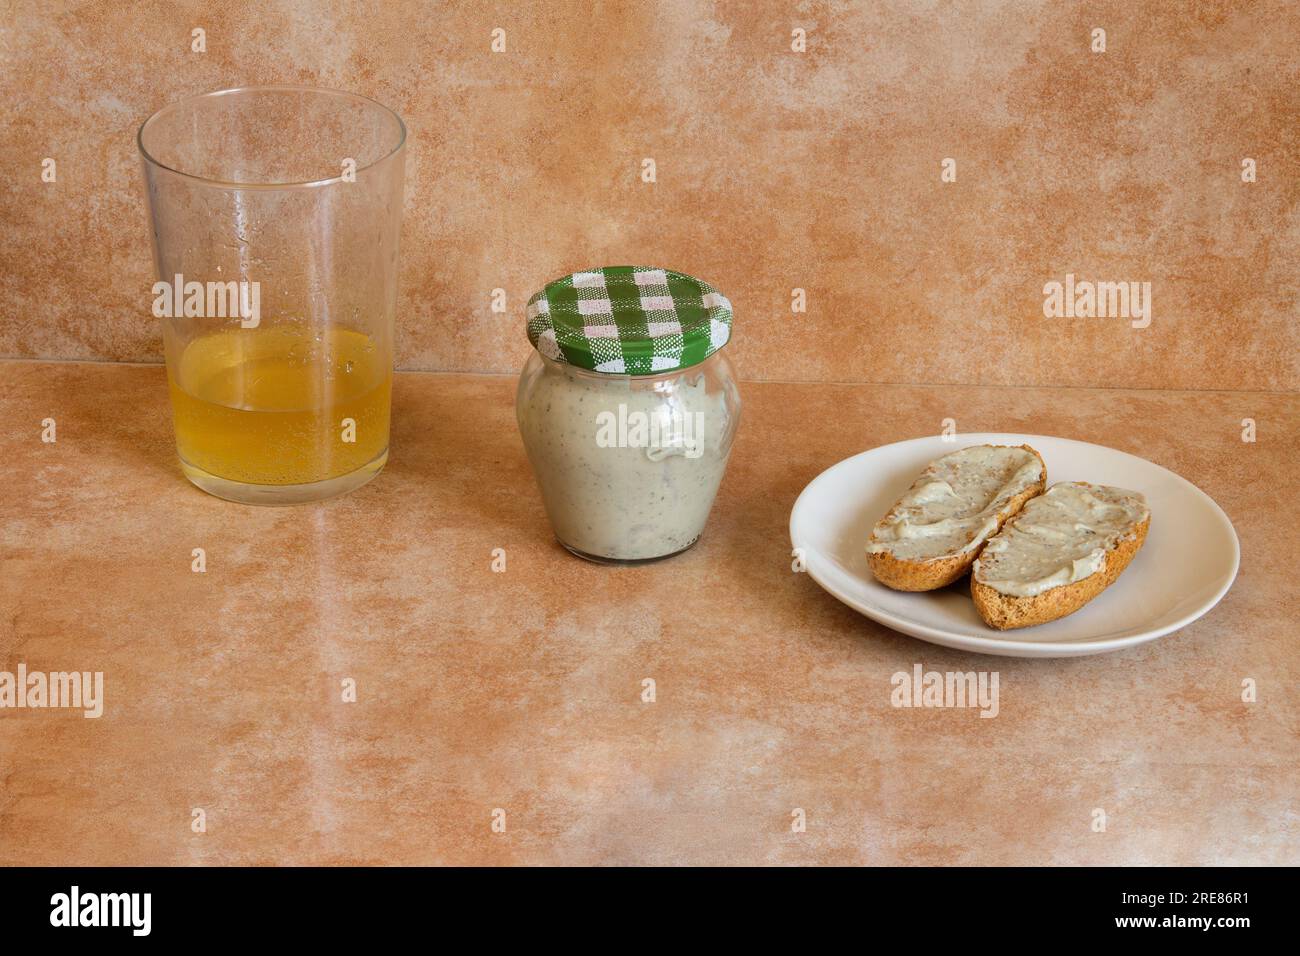 Cremiger Cabrales-Käse in einem kleinen transparenten Glas, kombiniert mit einem Glas Apfelwein und einem getoasteten Vollkornbrot garniert mit Cabrales-Käse. Tr Stockfoto